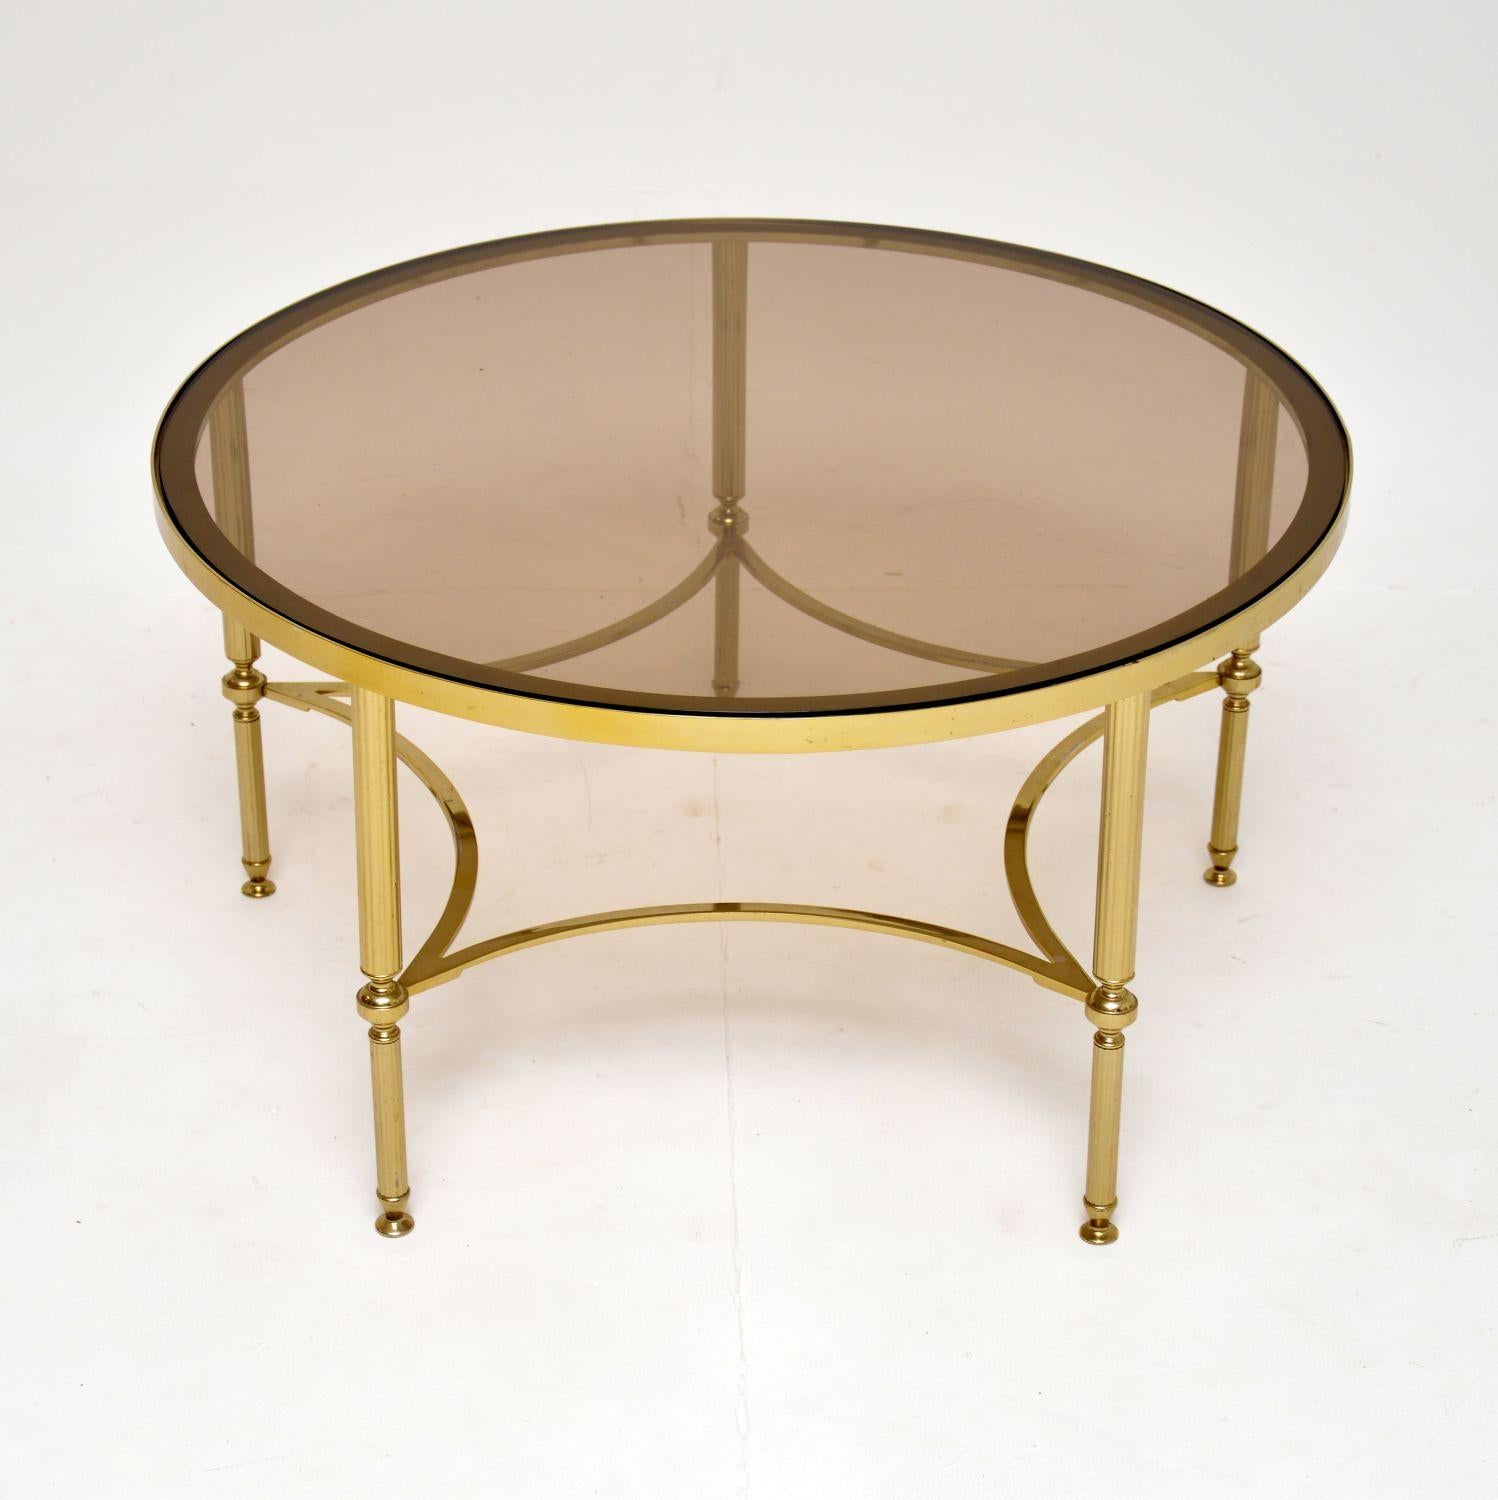 Une table basse en laiton et verre très élégante et extrêmement bien faite, datant des années 1960.

Il est d'une belle taille, le plateau circulaire a un verre encastré et repose sur cinq pieds cannelés reliés entre eux par des brancards.

L'état